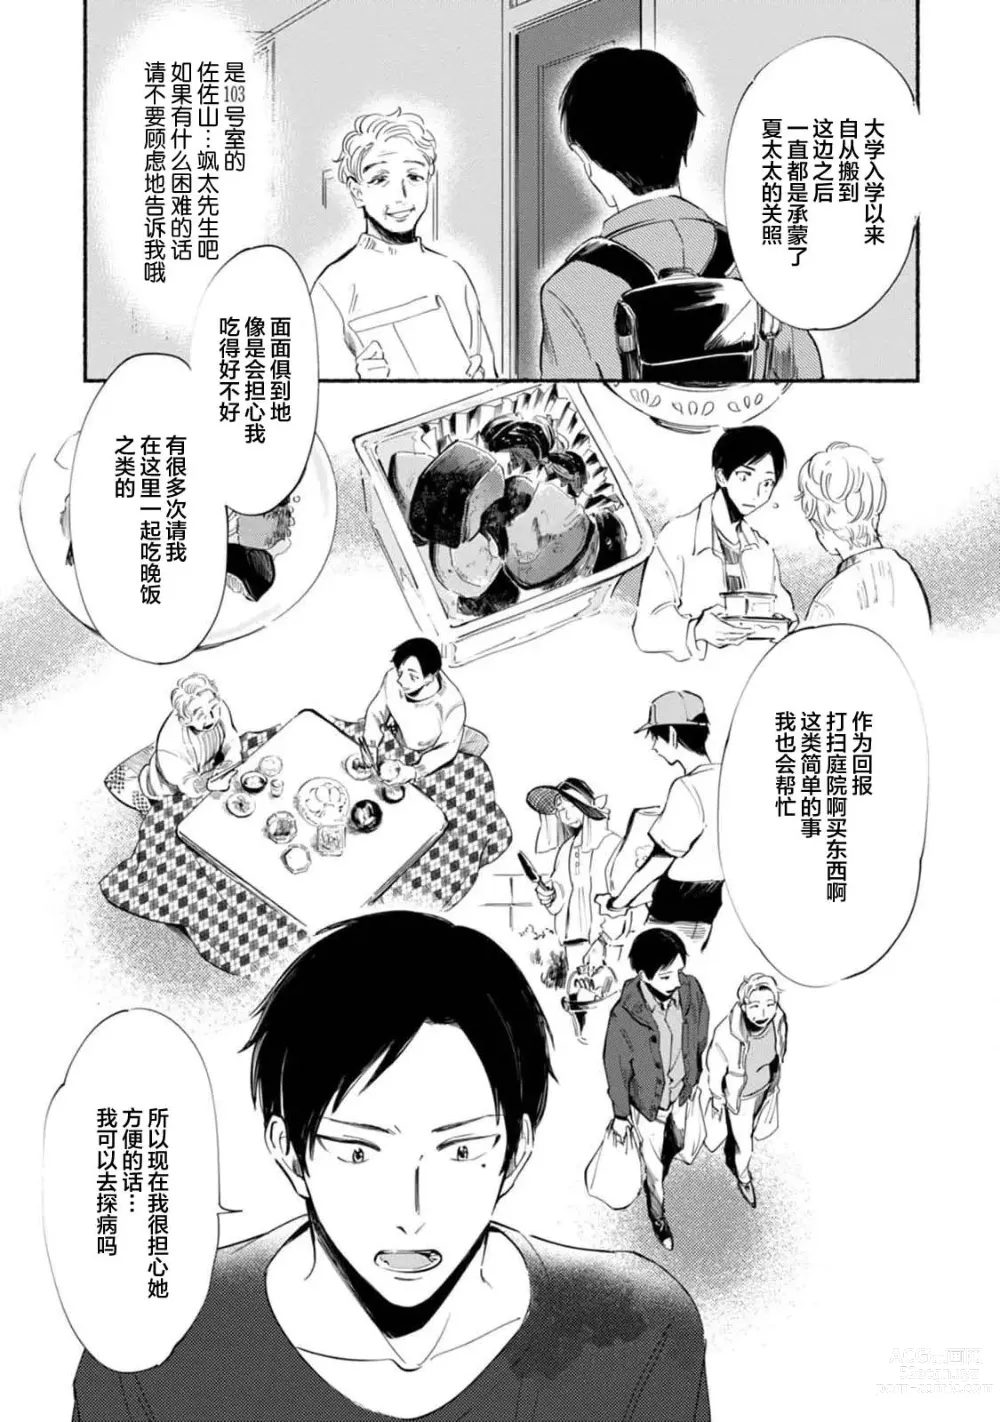 Page 27 of manga 与春为邻